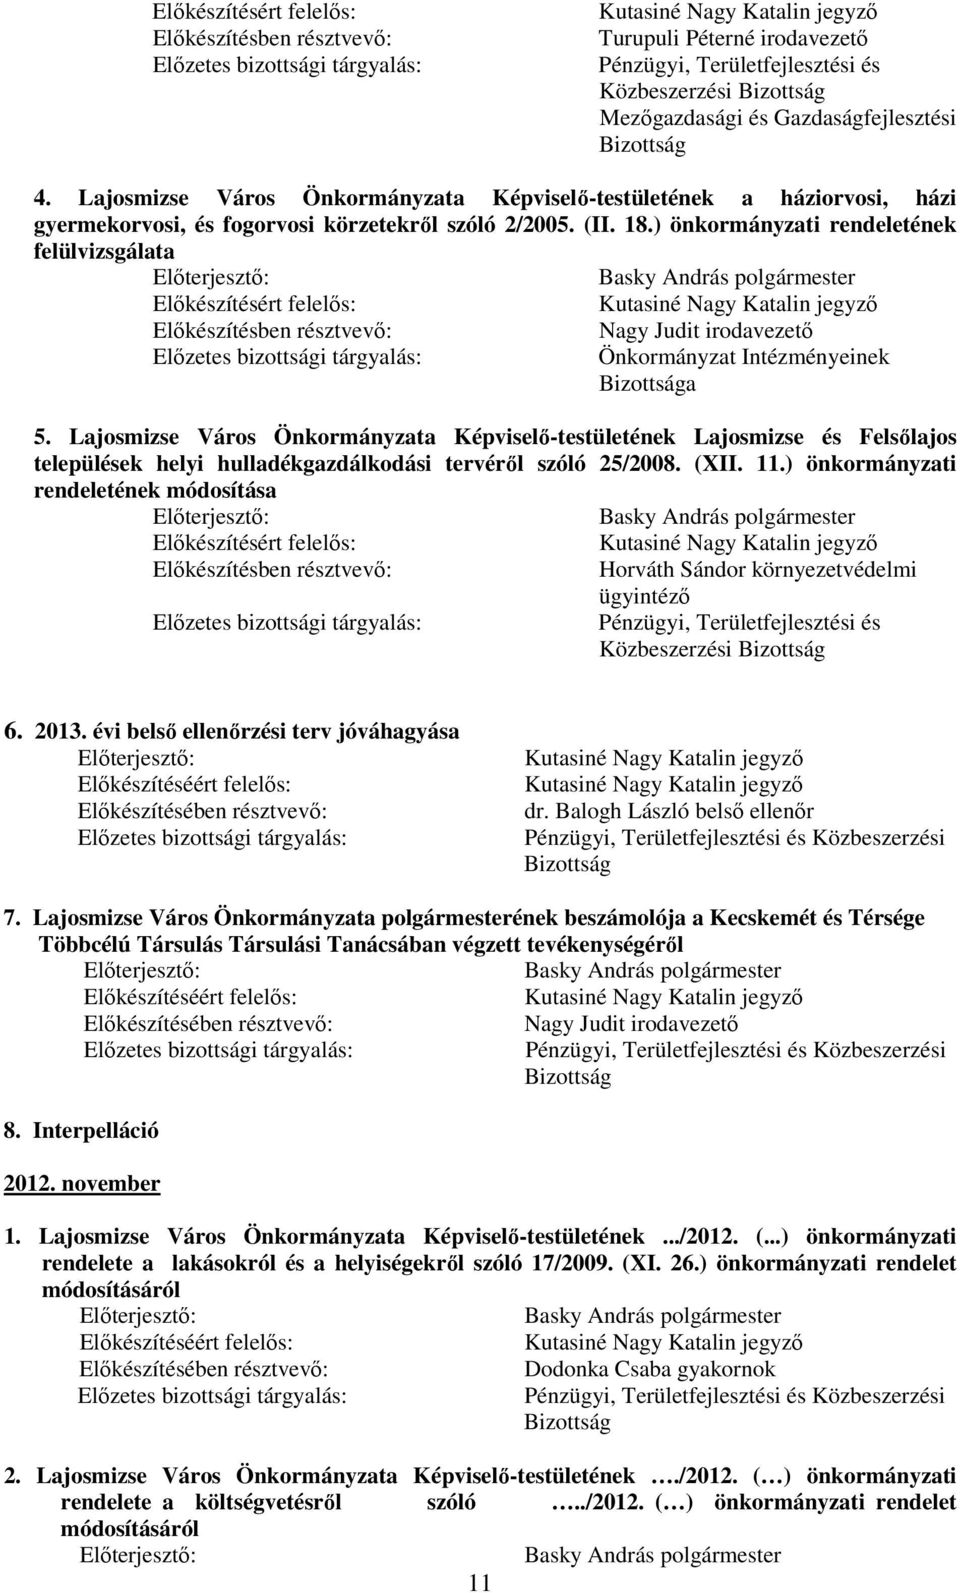 Lajosmizse Város Önkormányzata Képviselı-testületének Lajosmizse és Felsılajos települések helyi hulladékgazdálkodási tervérıl szóló 25/2008. (XII. 11.